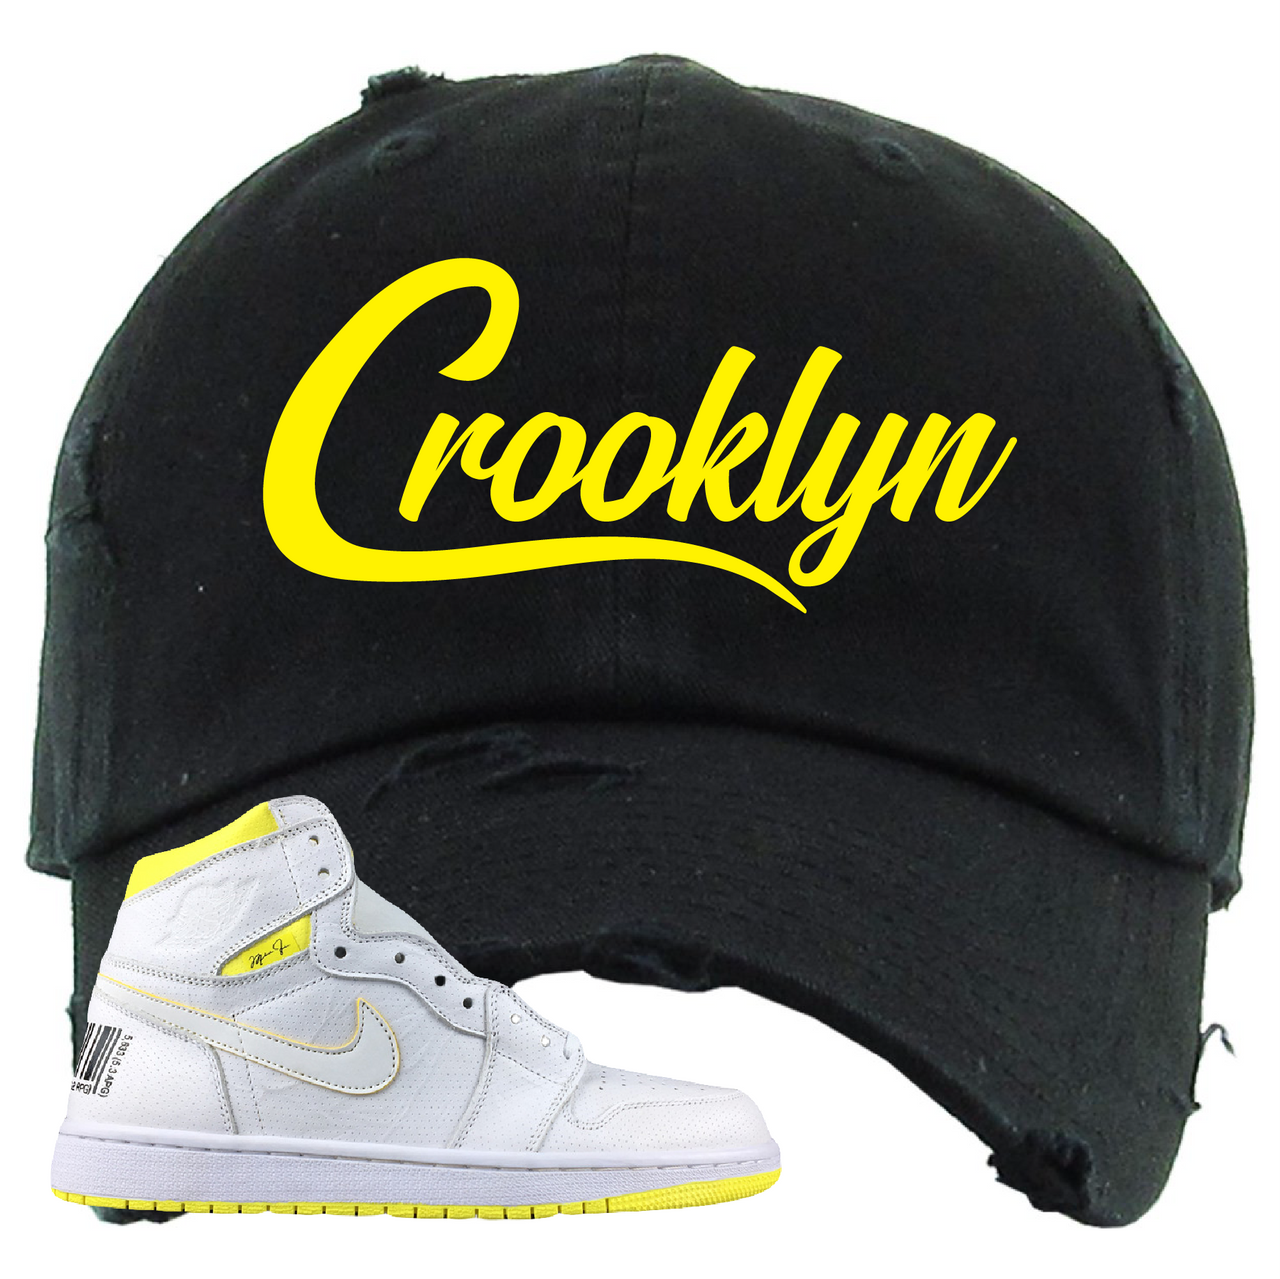 Jordan 1 First Class Flight Crooklyn Black Sneaker Matching Distressed Dad Hat